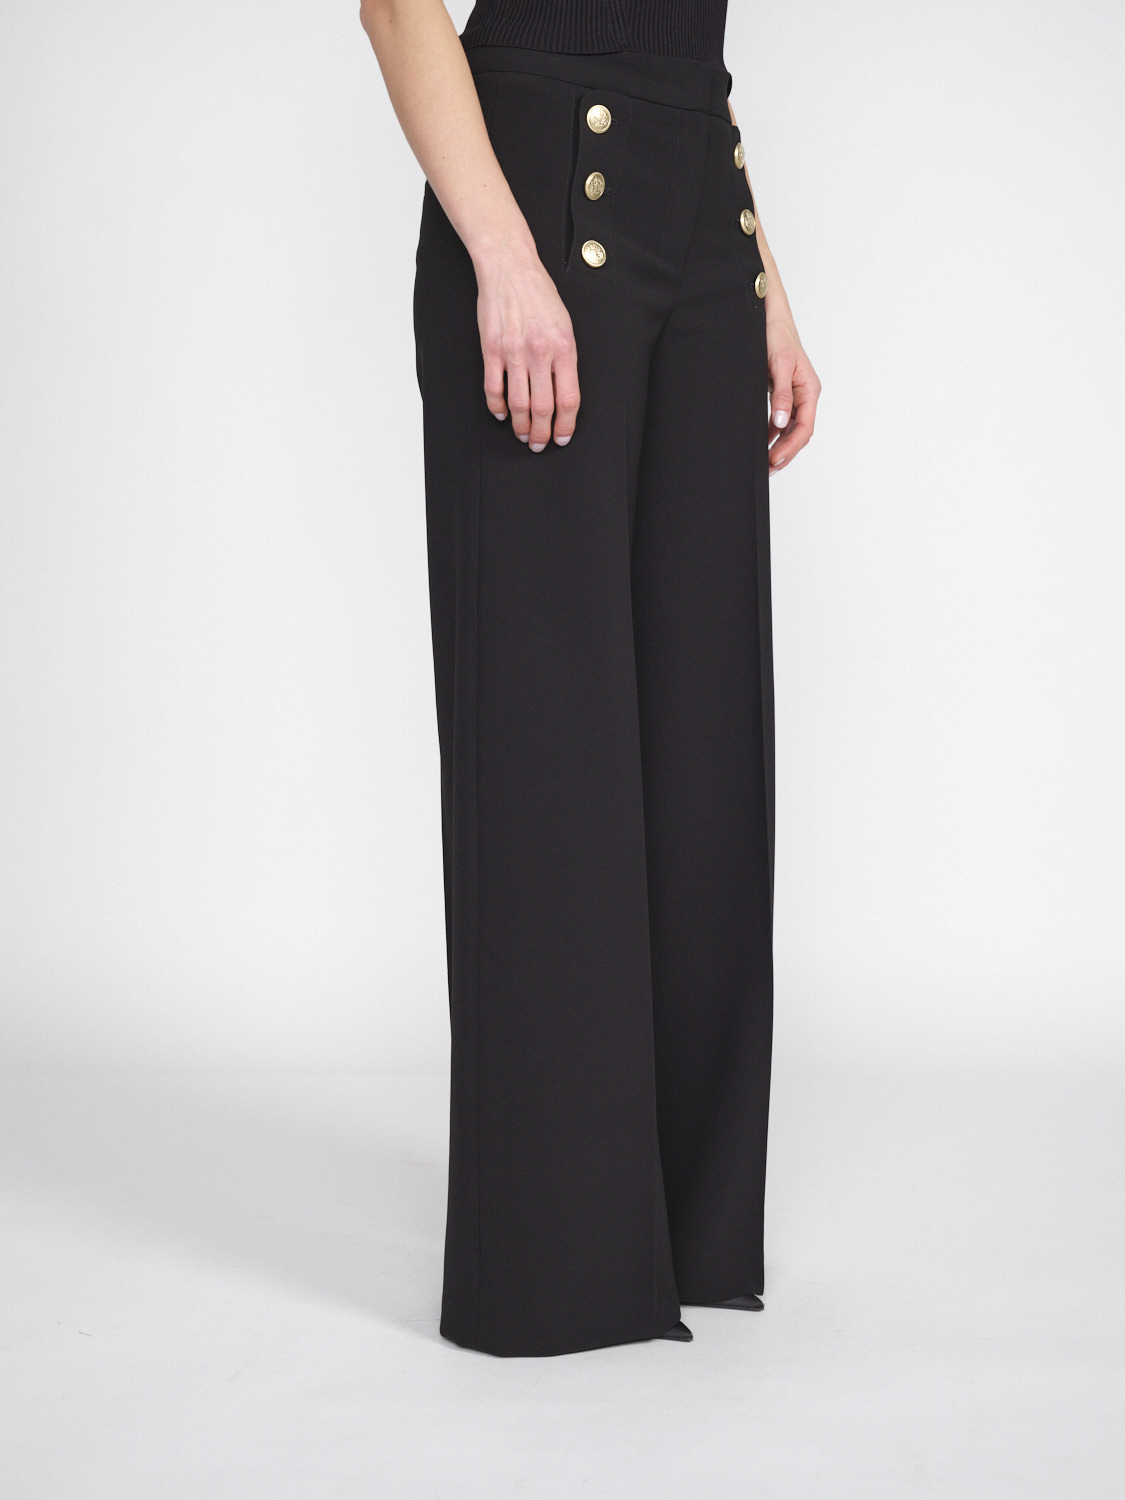 Seductive Bridget – Stretchige Hose mit goldfarbenen Knopfdetails   schwarz 36